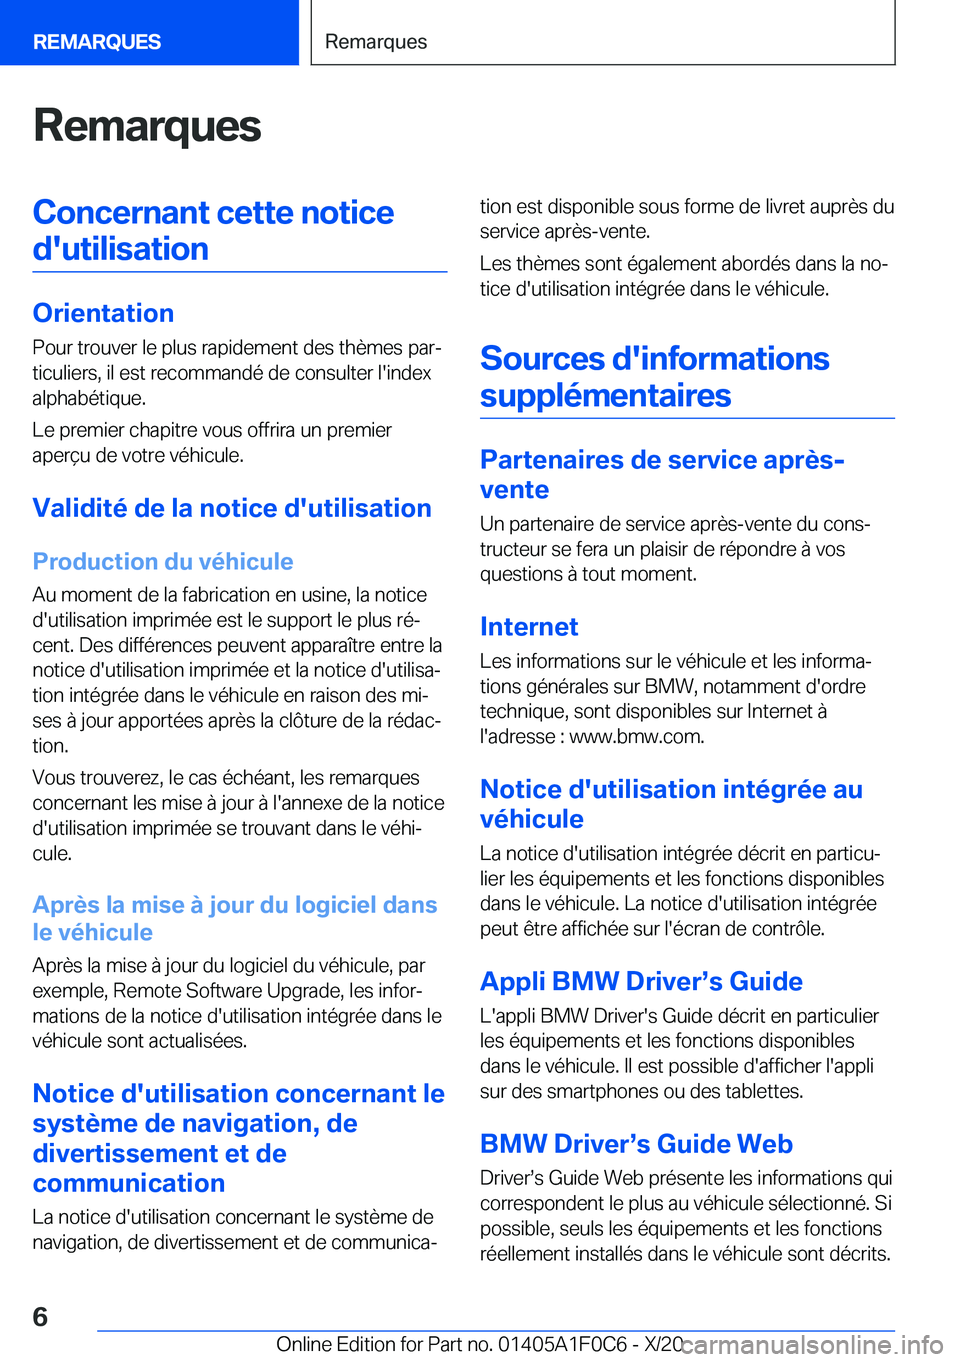 BMW X6 2021  Notices Demploi (in French) �R�e�m�a�r�q�u�e�s�C�o�n�c�e�r�n�a�n�t��c�e�t�t�e��n�o�t�i�c�e�d�'�u�t�i�l�i�s�a�t�i�o�n
�O�r�i�e�n�t�a�t�i�o�n �P�o�u�r��t�r�o�u�v�e�r��l�e��p�l�u�s��r�a�p�i�d�e�m�e�n�t��d�e�s��t�h�è�m�